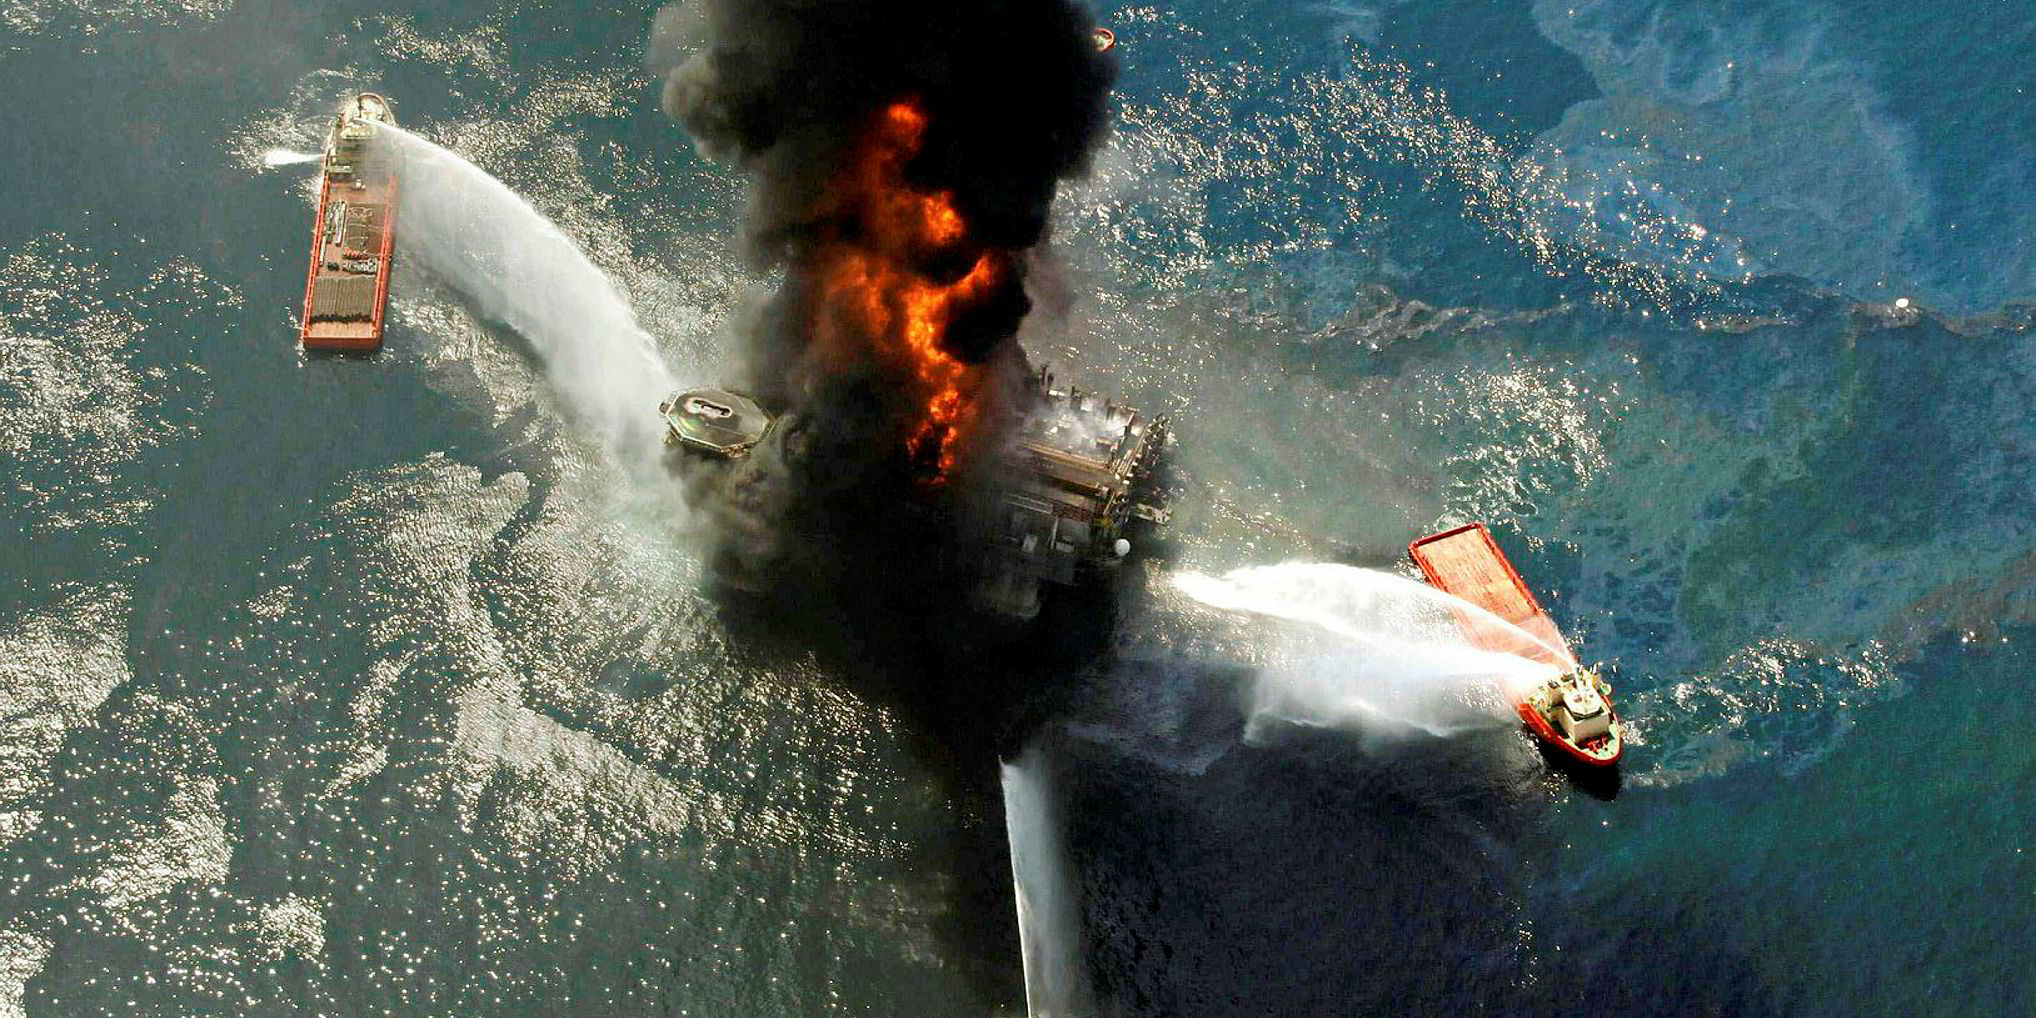 Трагедия унесшая жизни. Взрыв нефтяной платформы Deepwater Horizon 2010. Взрыв нефтяной платформы Deepwater Horizon в мексиканском заливе. Взрыв нефтяной платформы Deepwater Horizon - 20 апреля 2010 года. Мексиканский залив 2010.